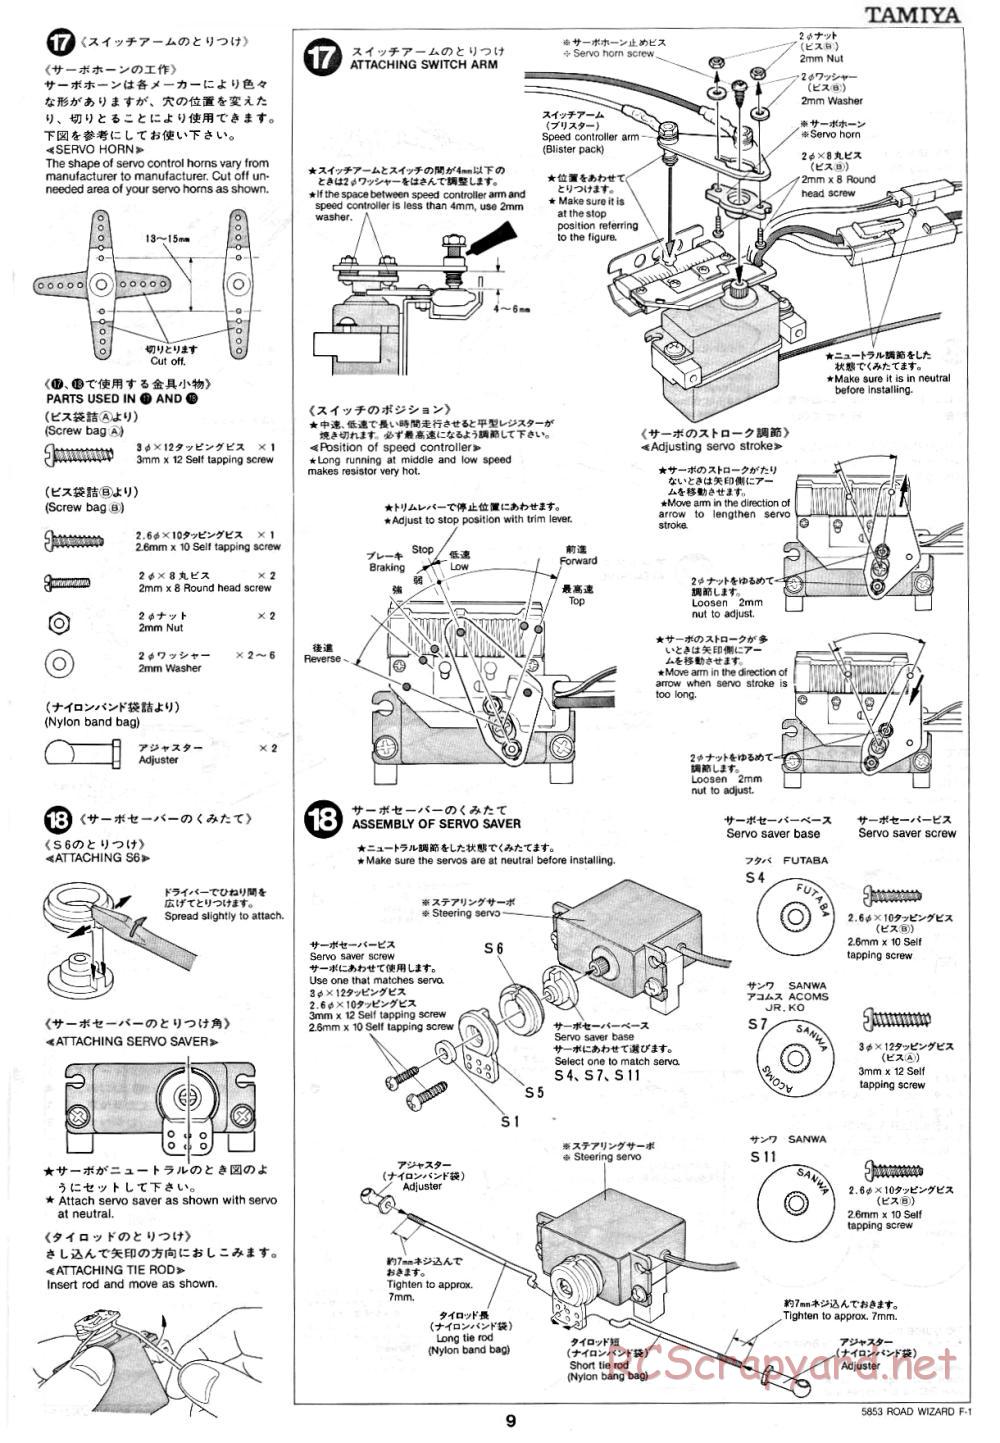 Tamiya - Road Wizard F-1 - 58053 - Manual - Page 9